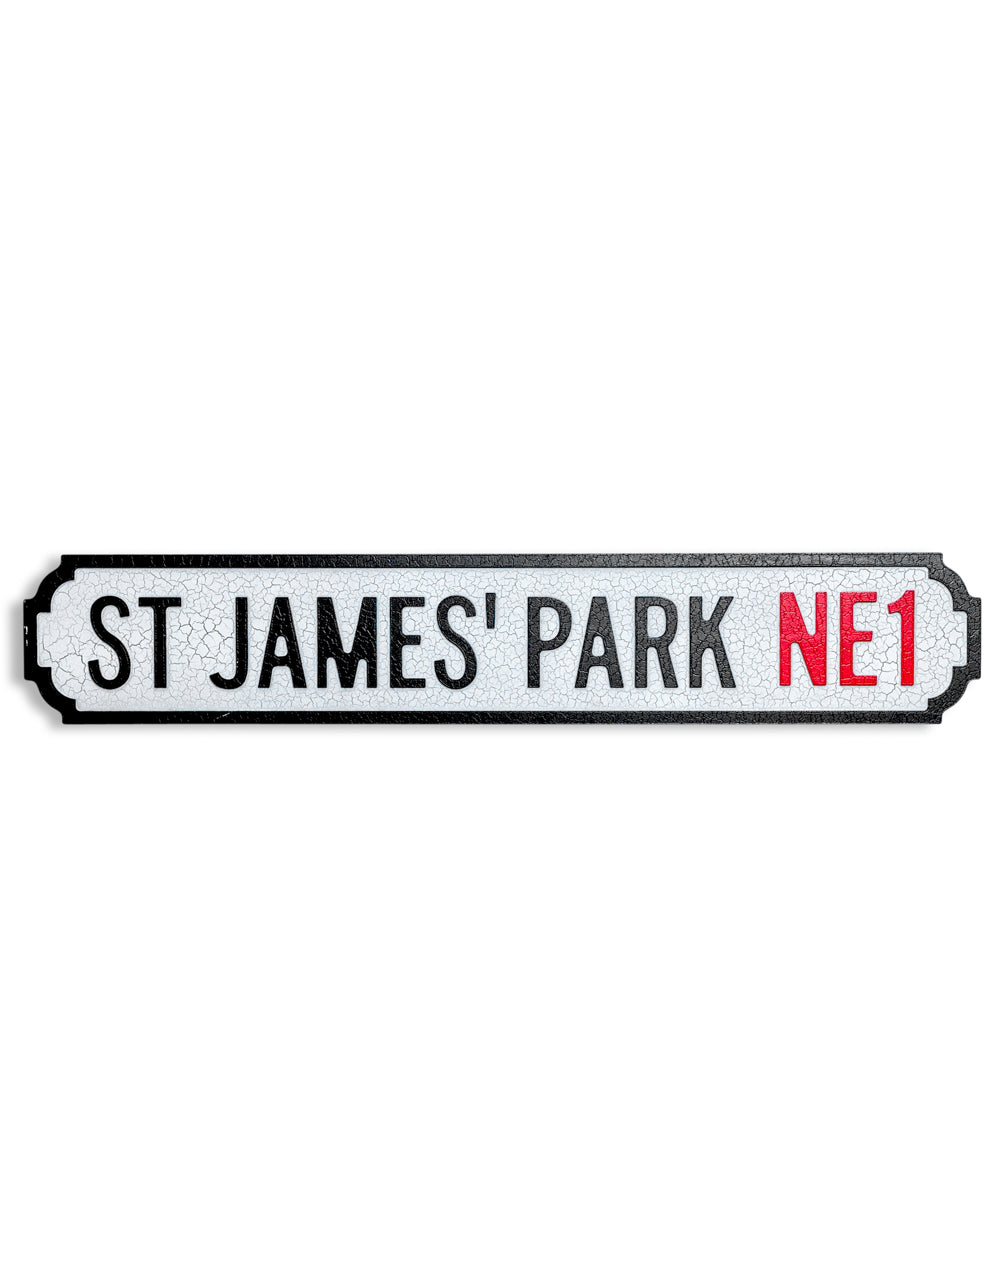 Antiqued Wooden "St James' Park NE1" Road Sign